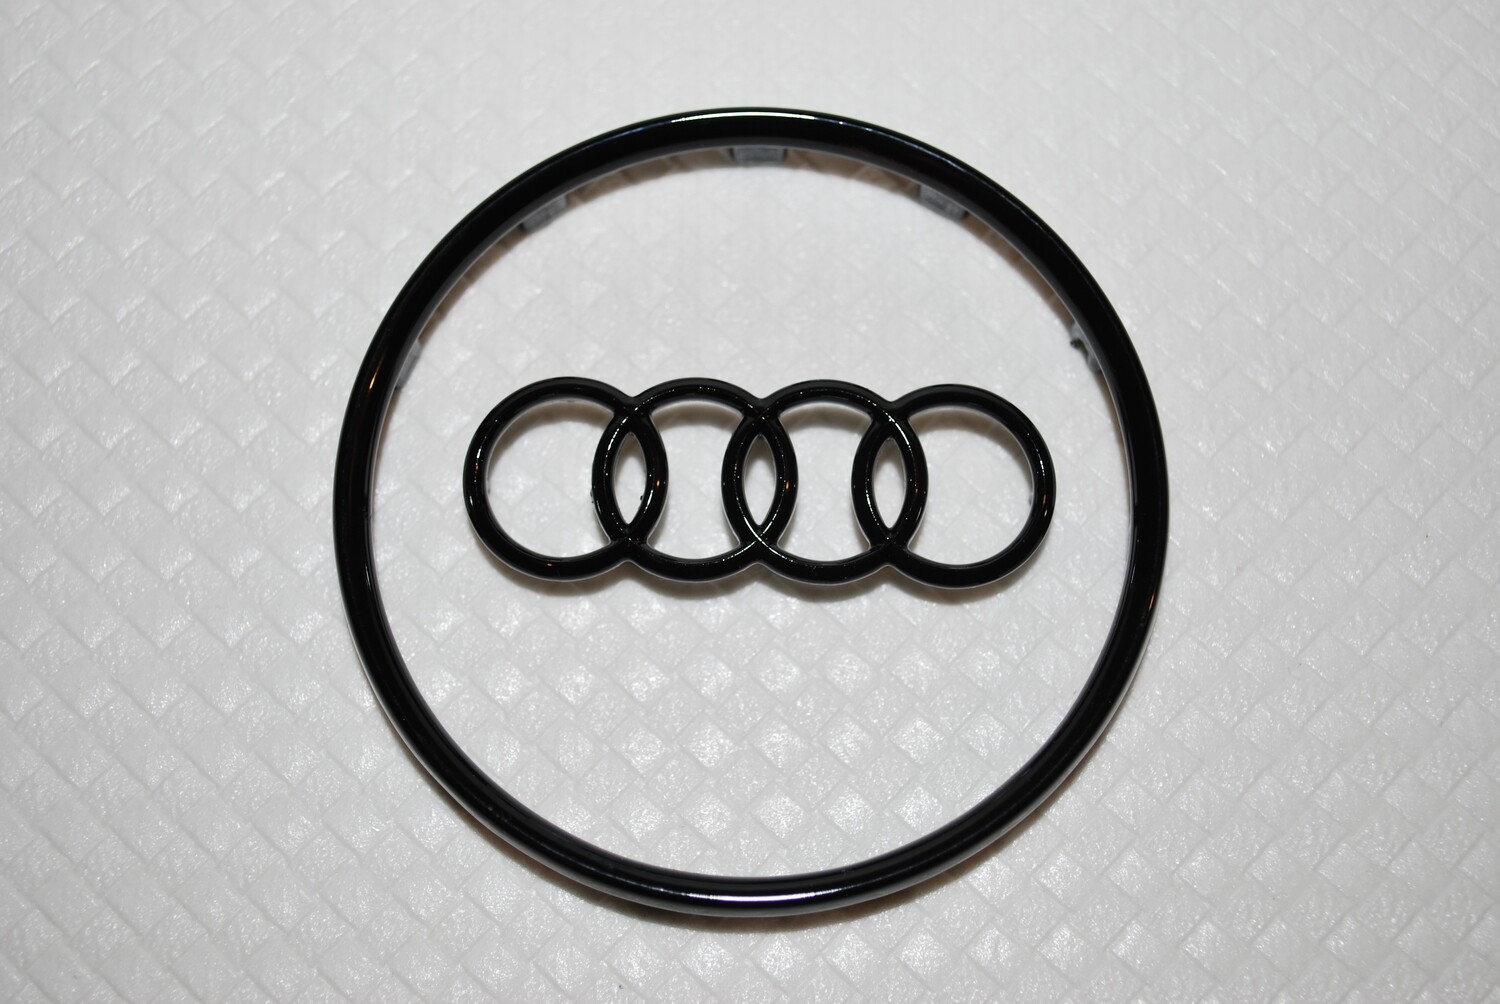 Logo e anello per volante Audi cover piccola new